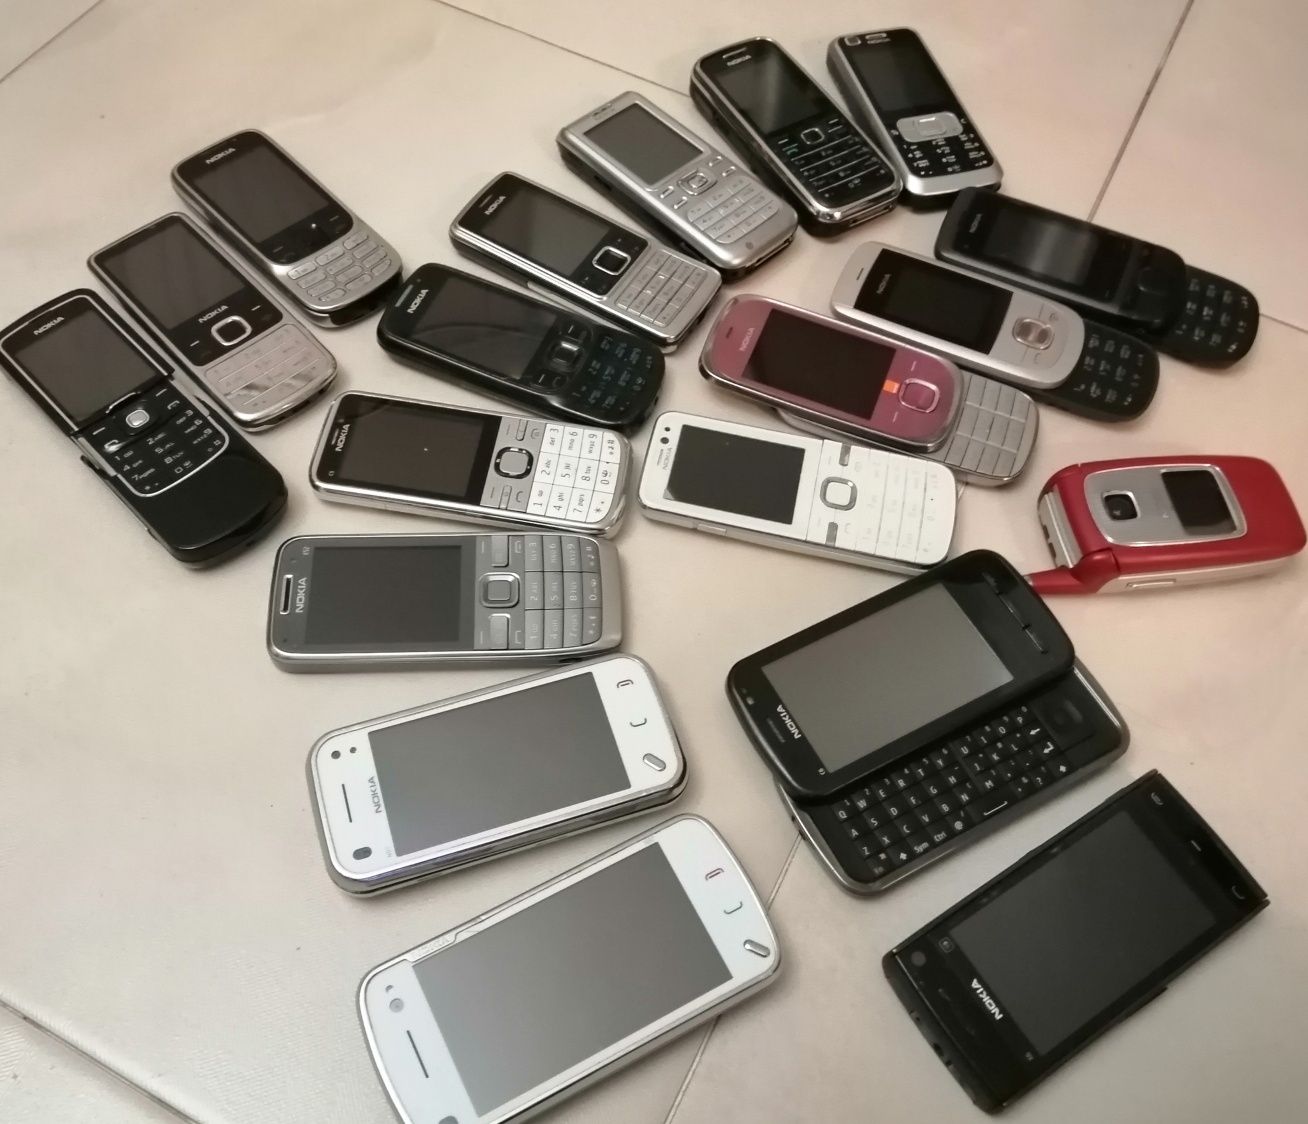 Nokia 8600,6700,N97,E52,C5,X6,C6,6233,6234,6730,6303,6300,C2,2220,6103